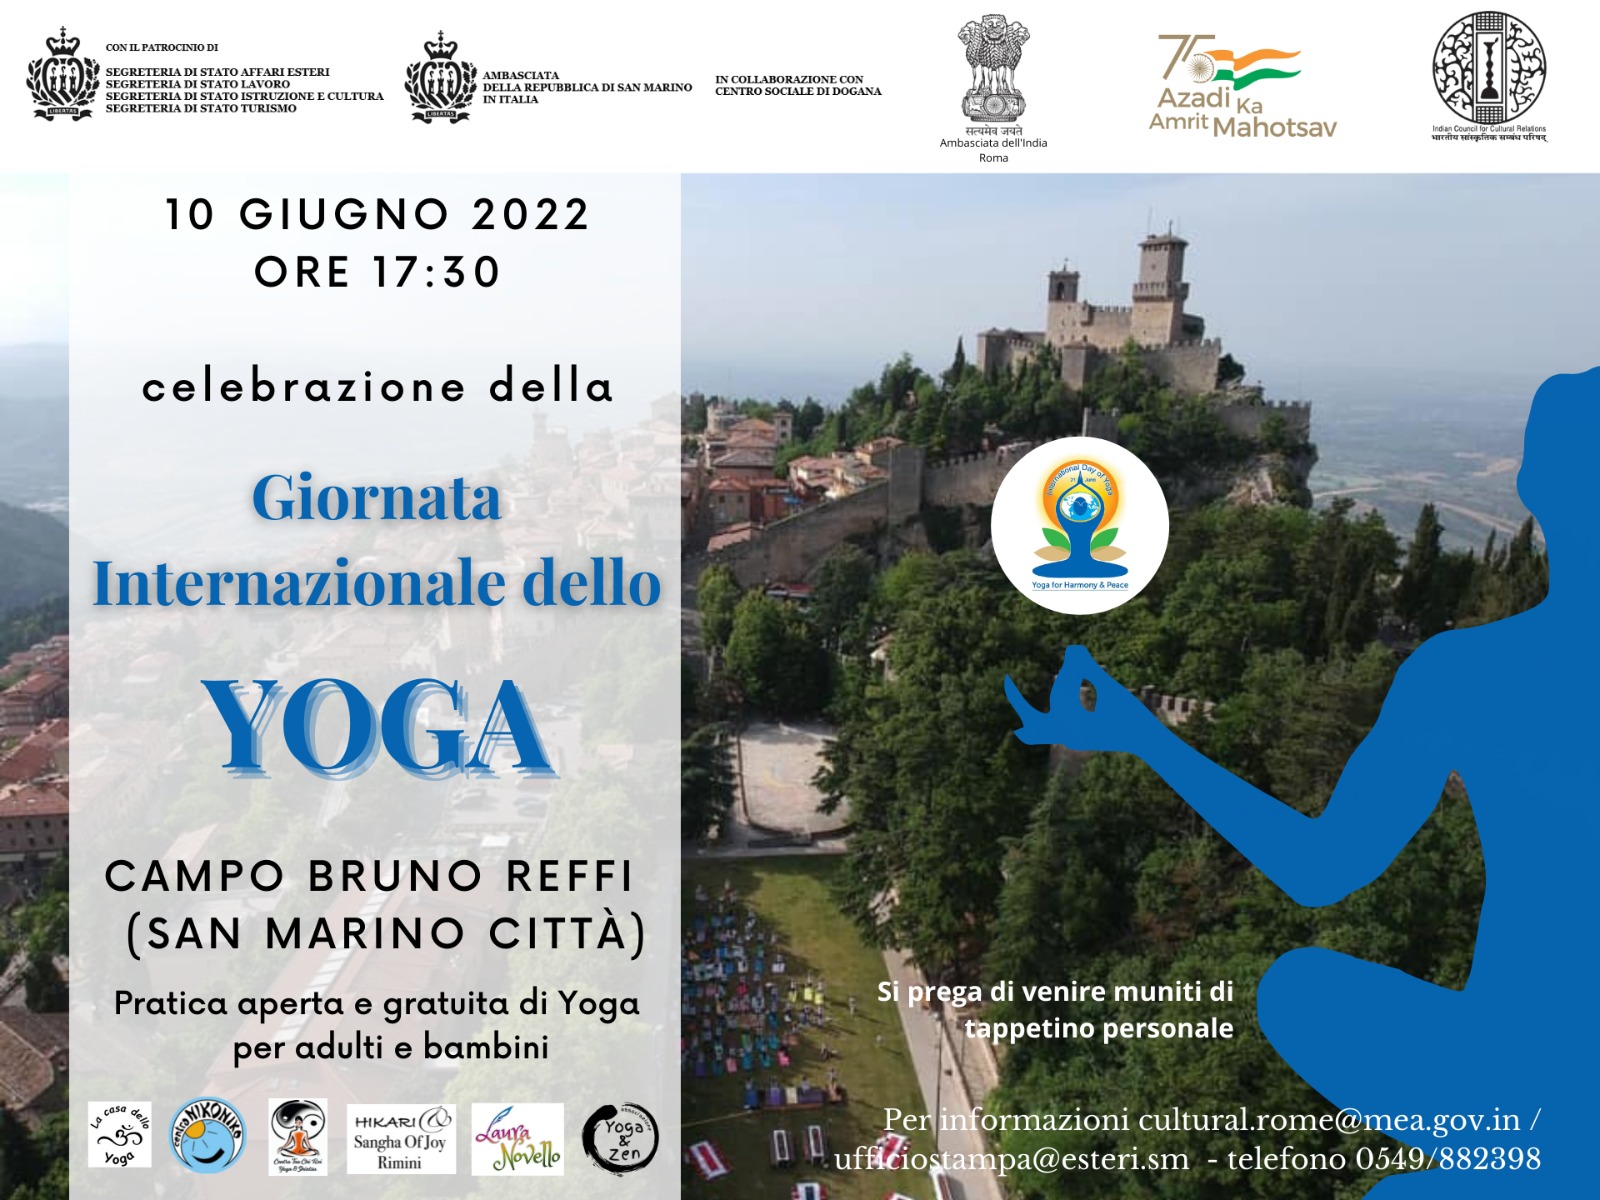 San Marino celebra la Giornata internazionale dello yoga